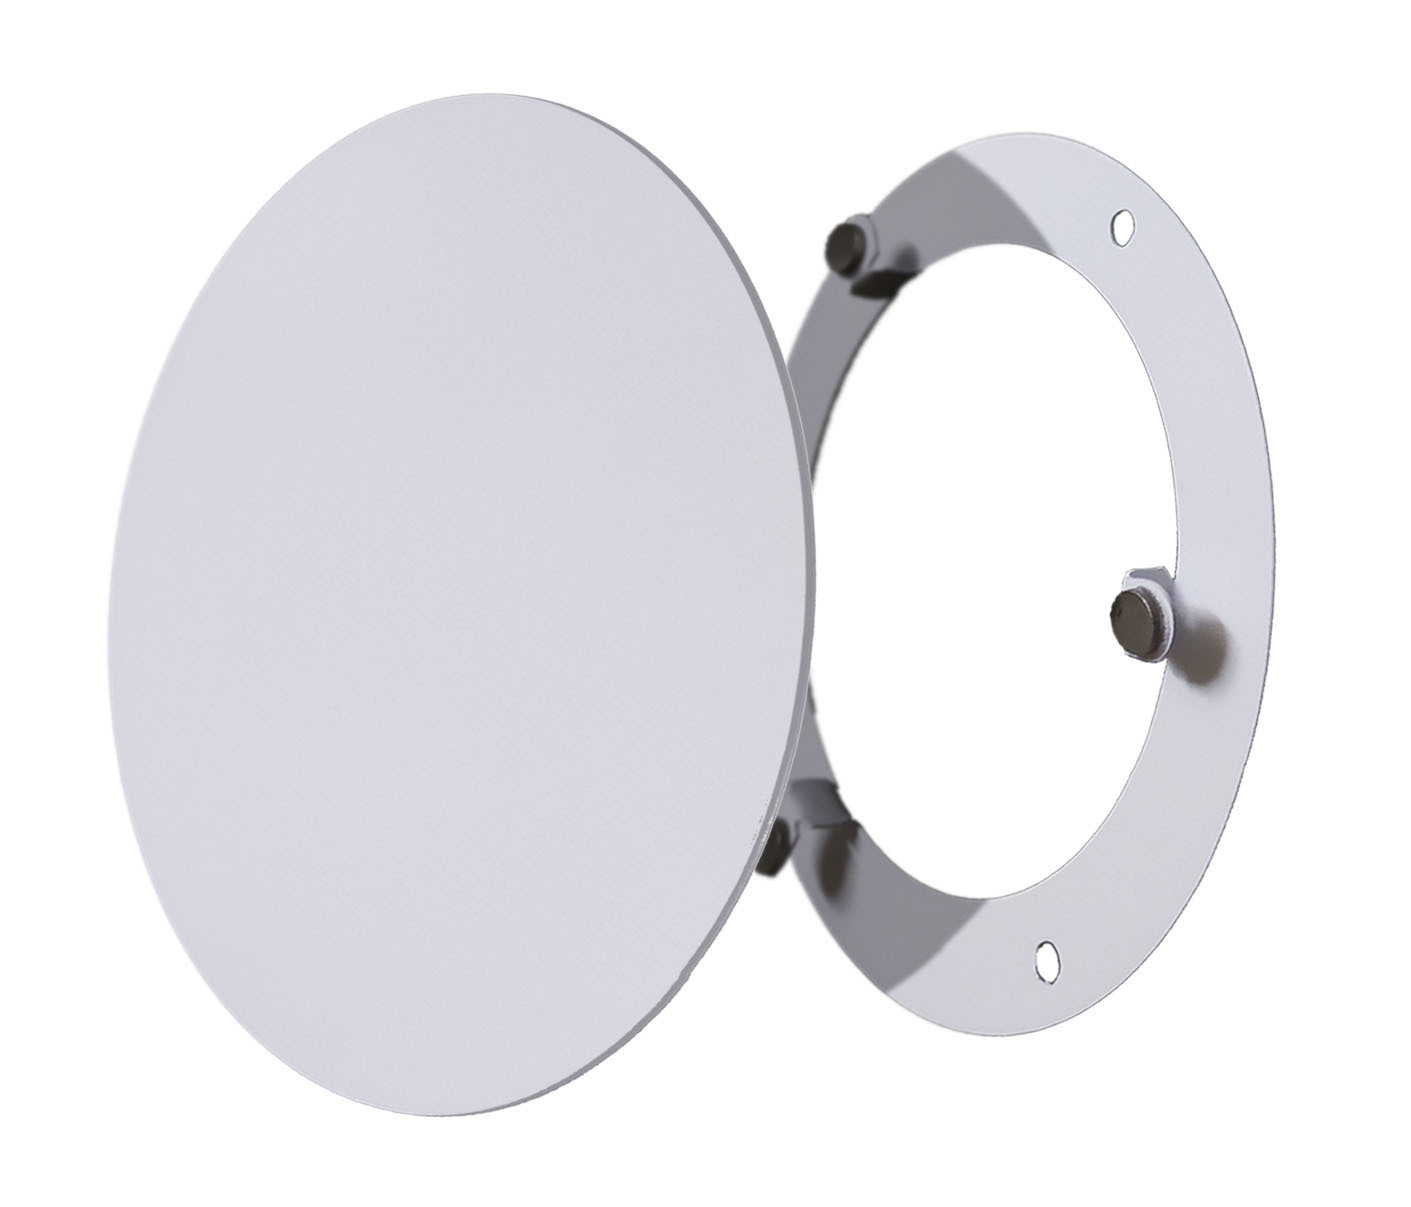 Решетка ВИЗИОНЕР стальная на магнитах круглая РДК-150 белая кошелек на магнитах серый